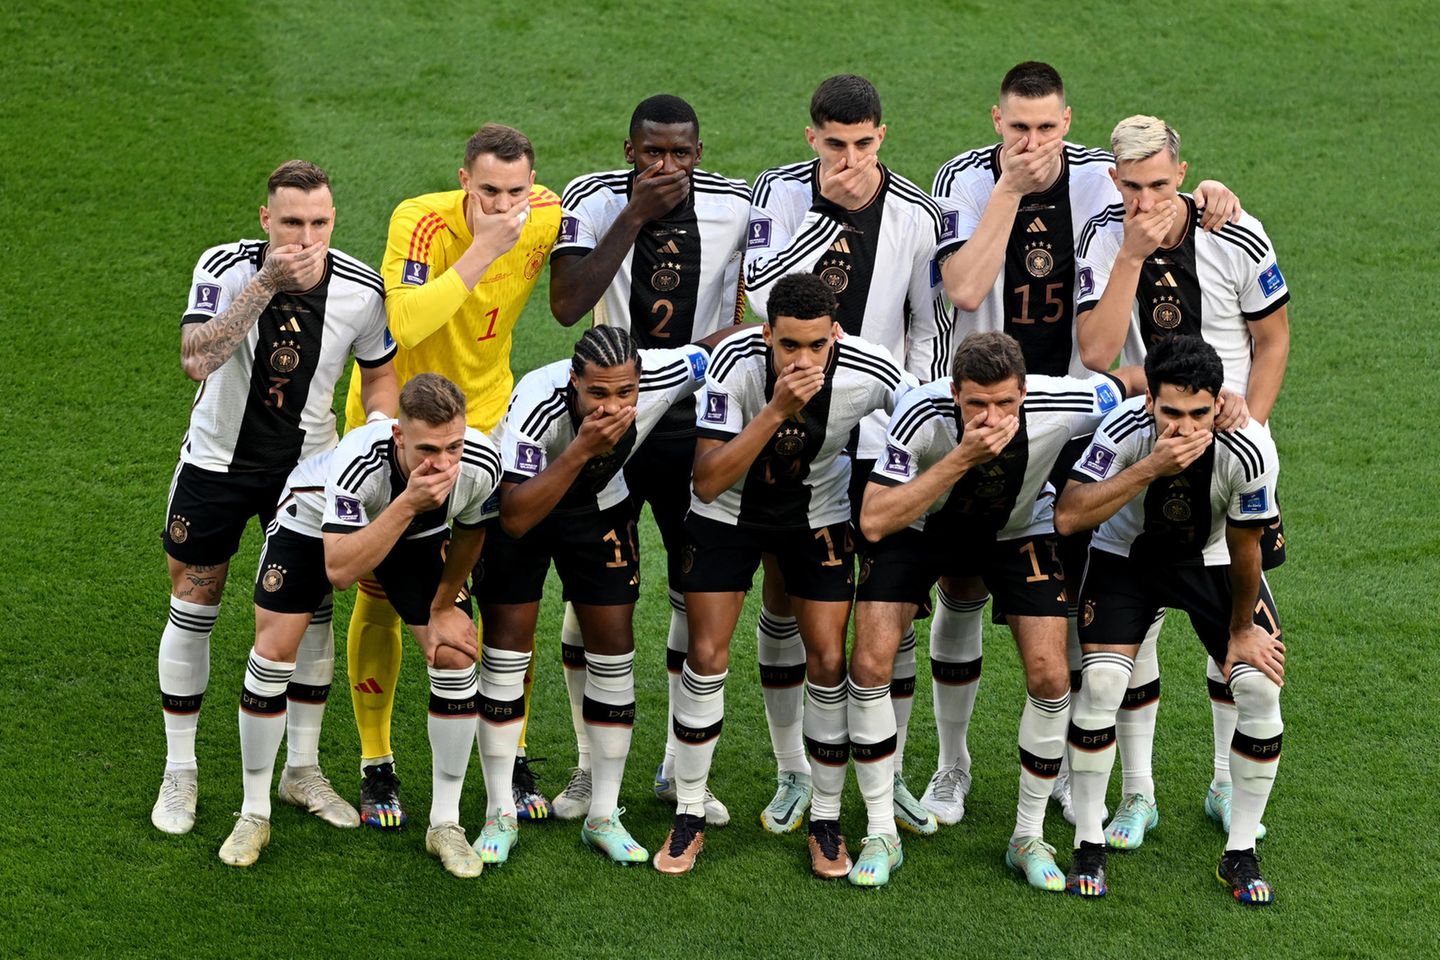 Die One-Love-Binde hat die Fifa verboten: Die deutsche Nationalmannschaft protestierte mit einer Geste und verlor das Spiel gegen Japan